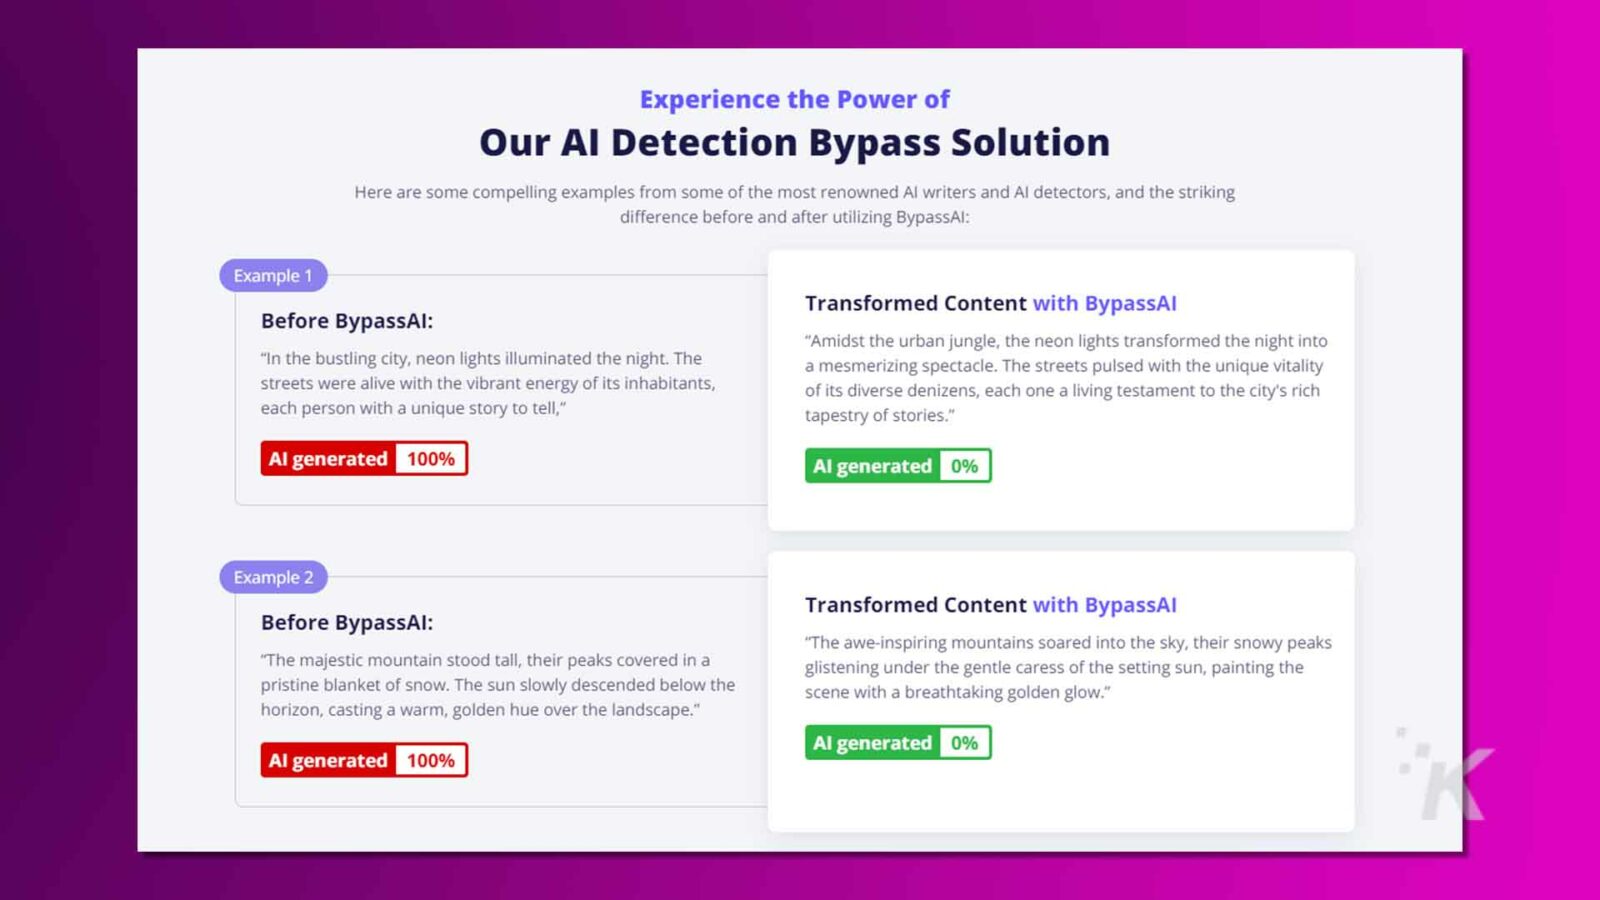 Imaginea prezintă o pagină web care promovează o soluție de ocolire de detectare a IA cu exemple de transformare a conținutului alăturate înainte și după.